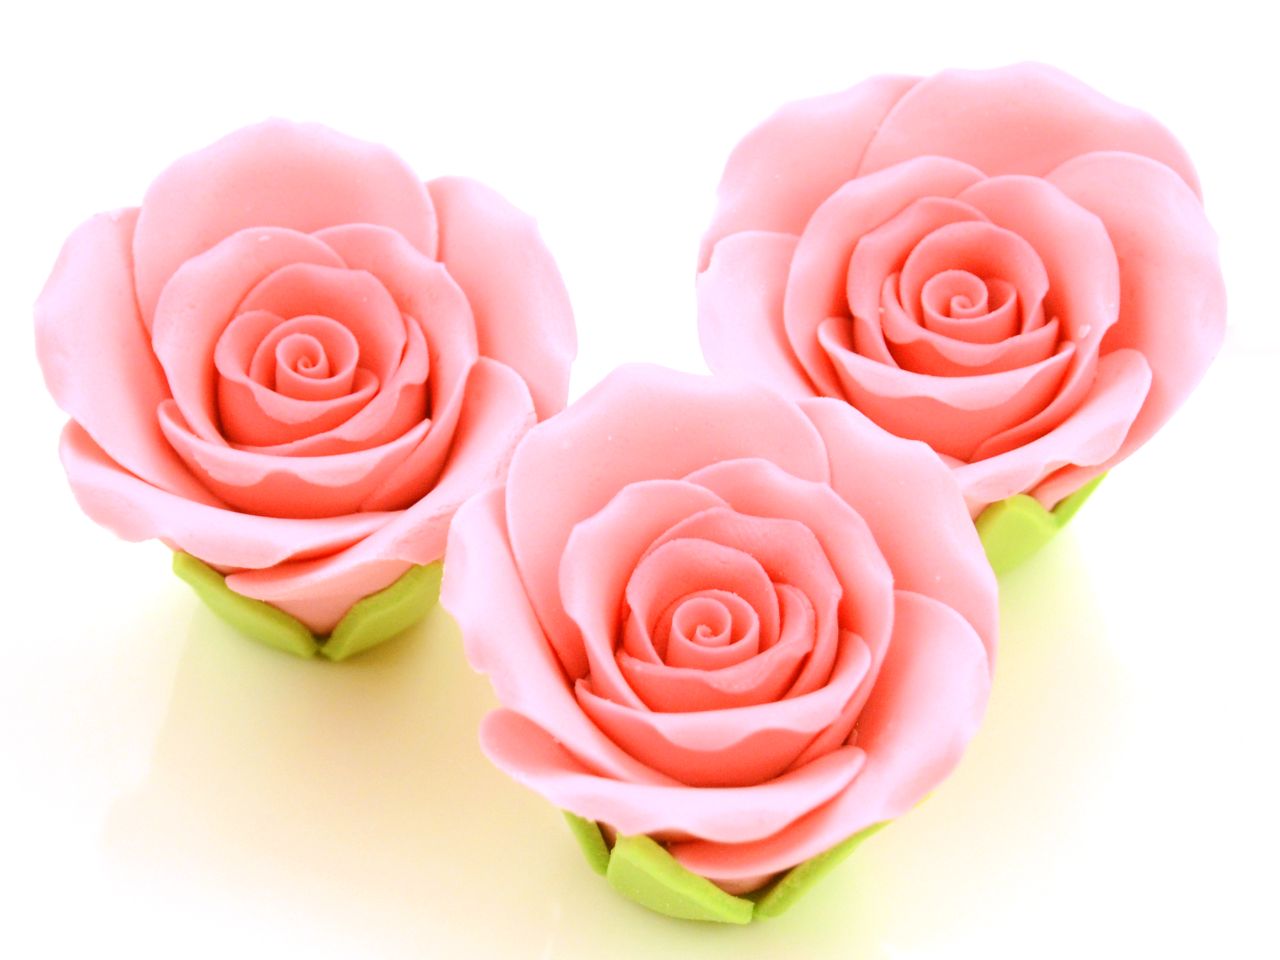 Zucker-Rosen, Rosa, 3 Stück, 5 x 3,5 cm